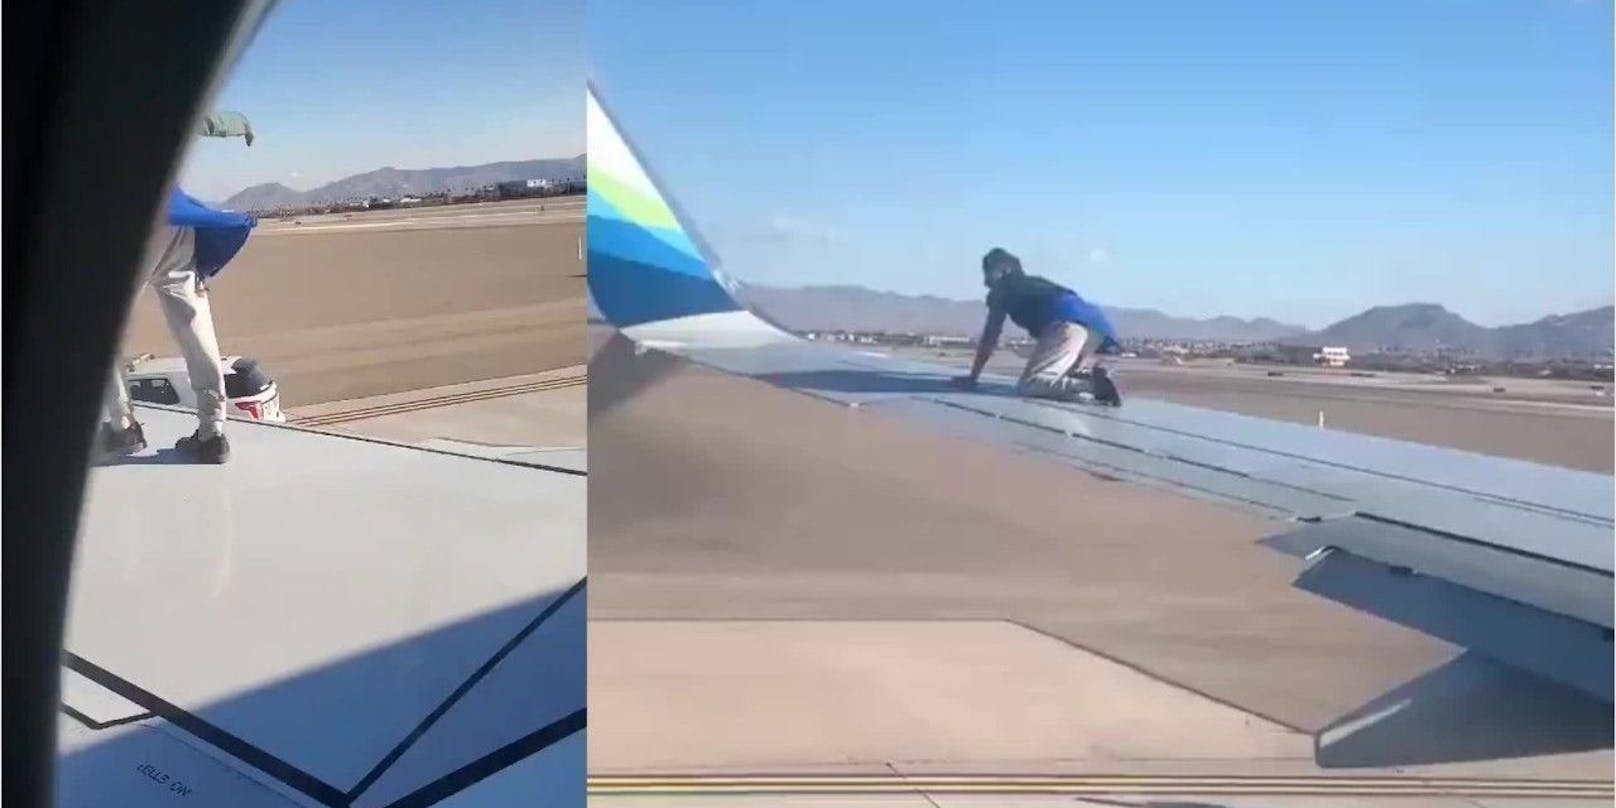 Der Mann kletterte auf den Flügel des Flugzeugs.